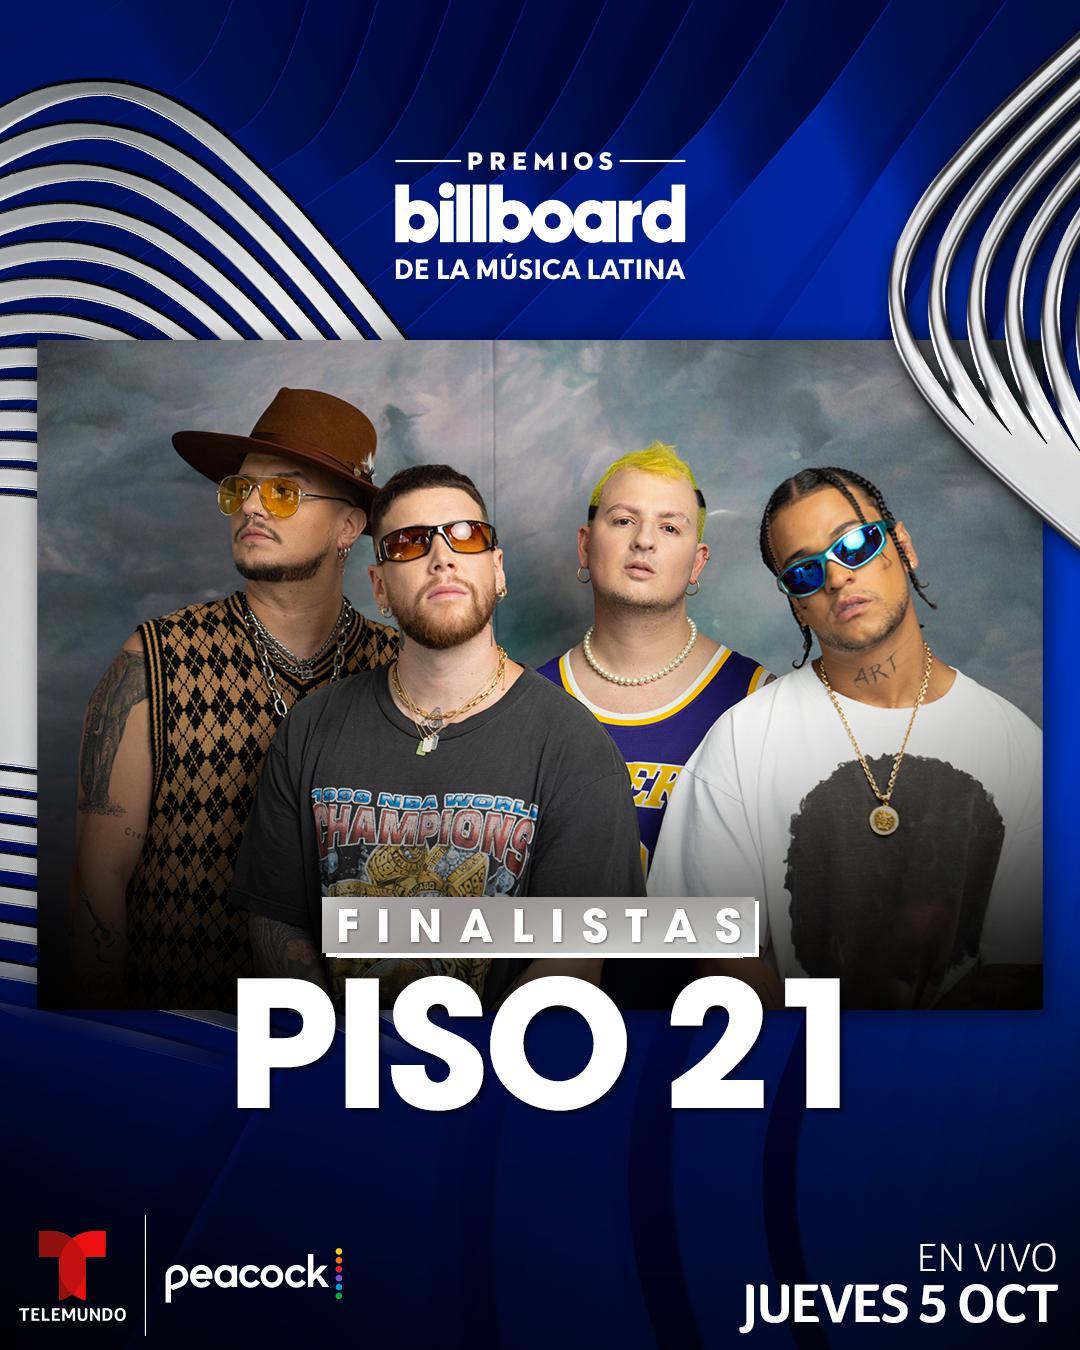 PISO 21 celebra sus dos nominaciones a Premios Billboard 2023